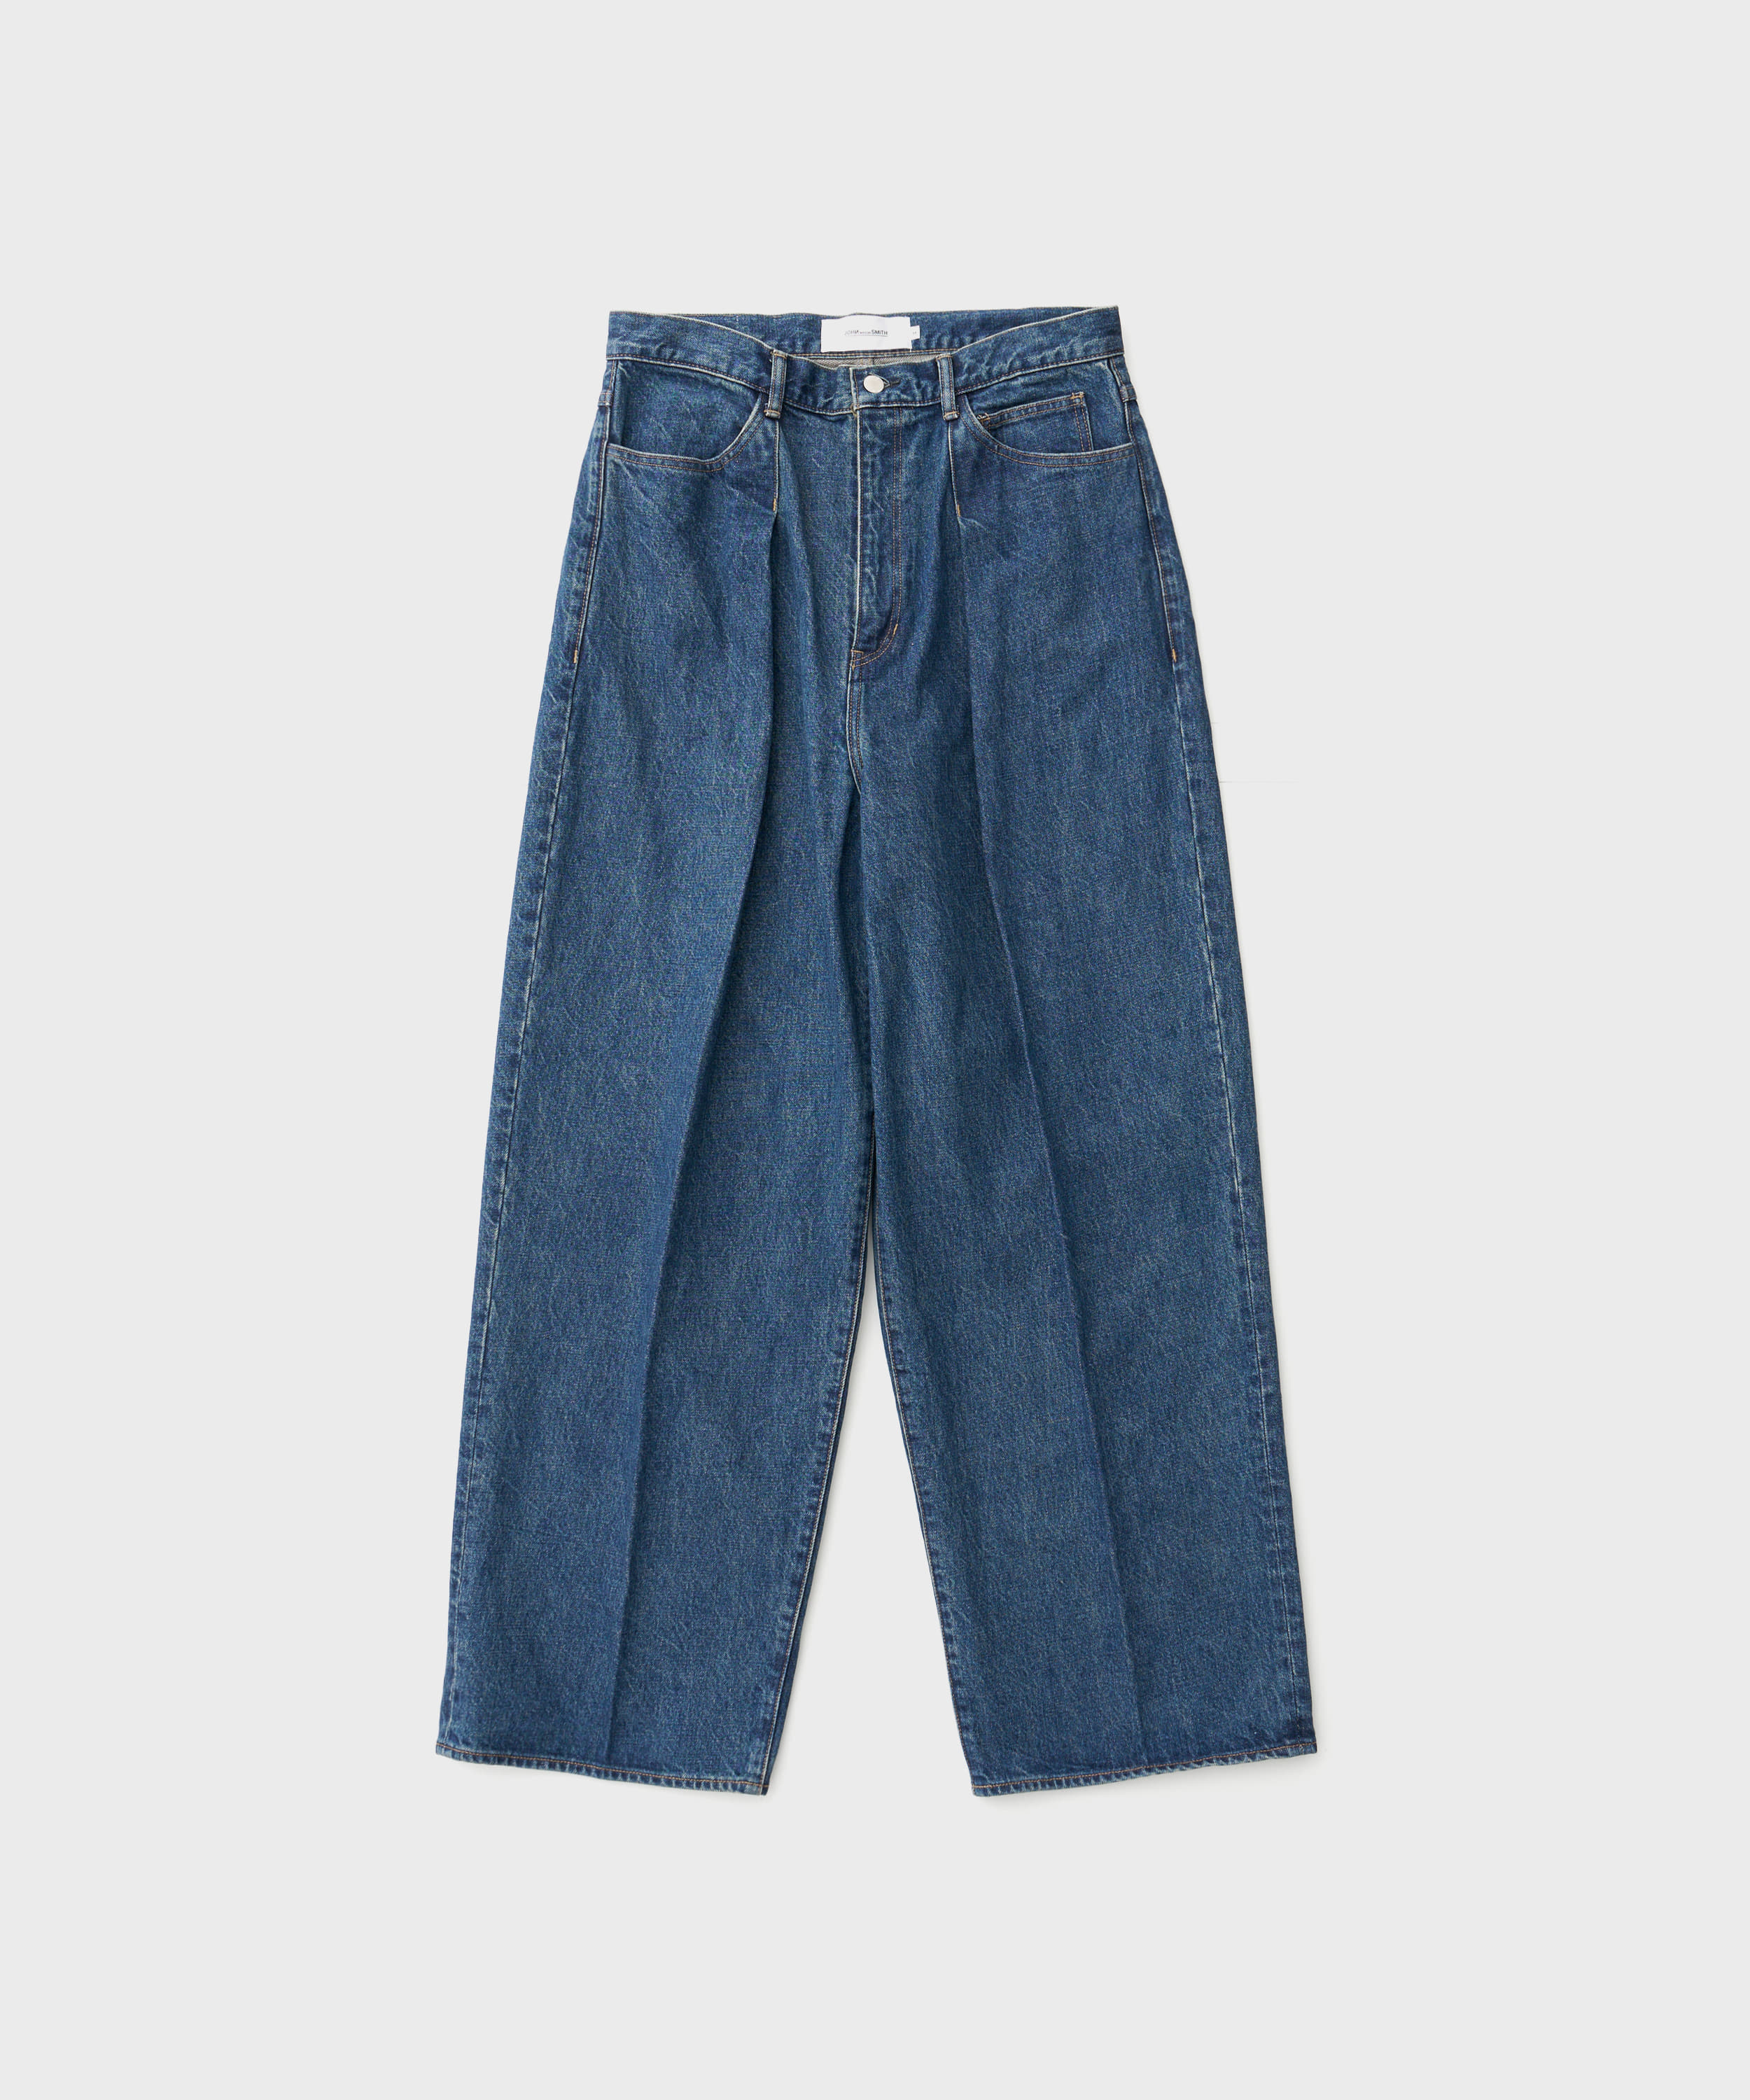 14.5oz Denim In Tuck Comfort Tapered Pants (Vintage Wash)